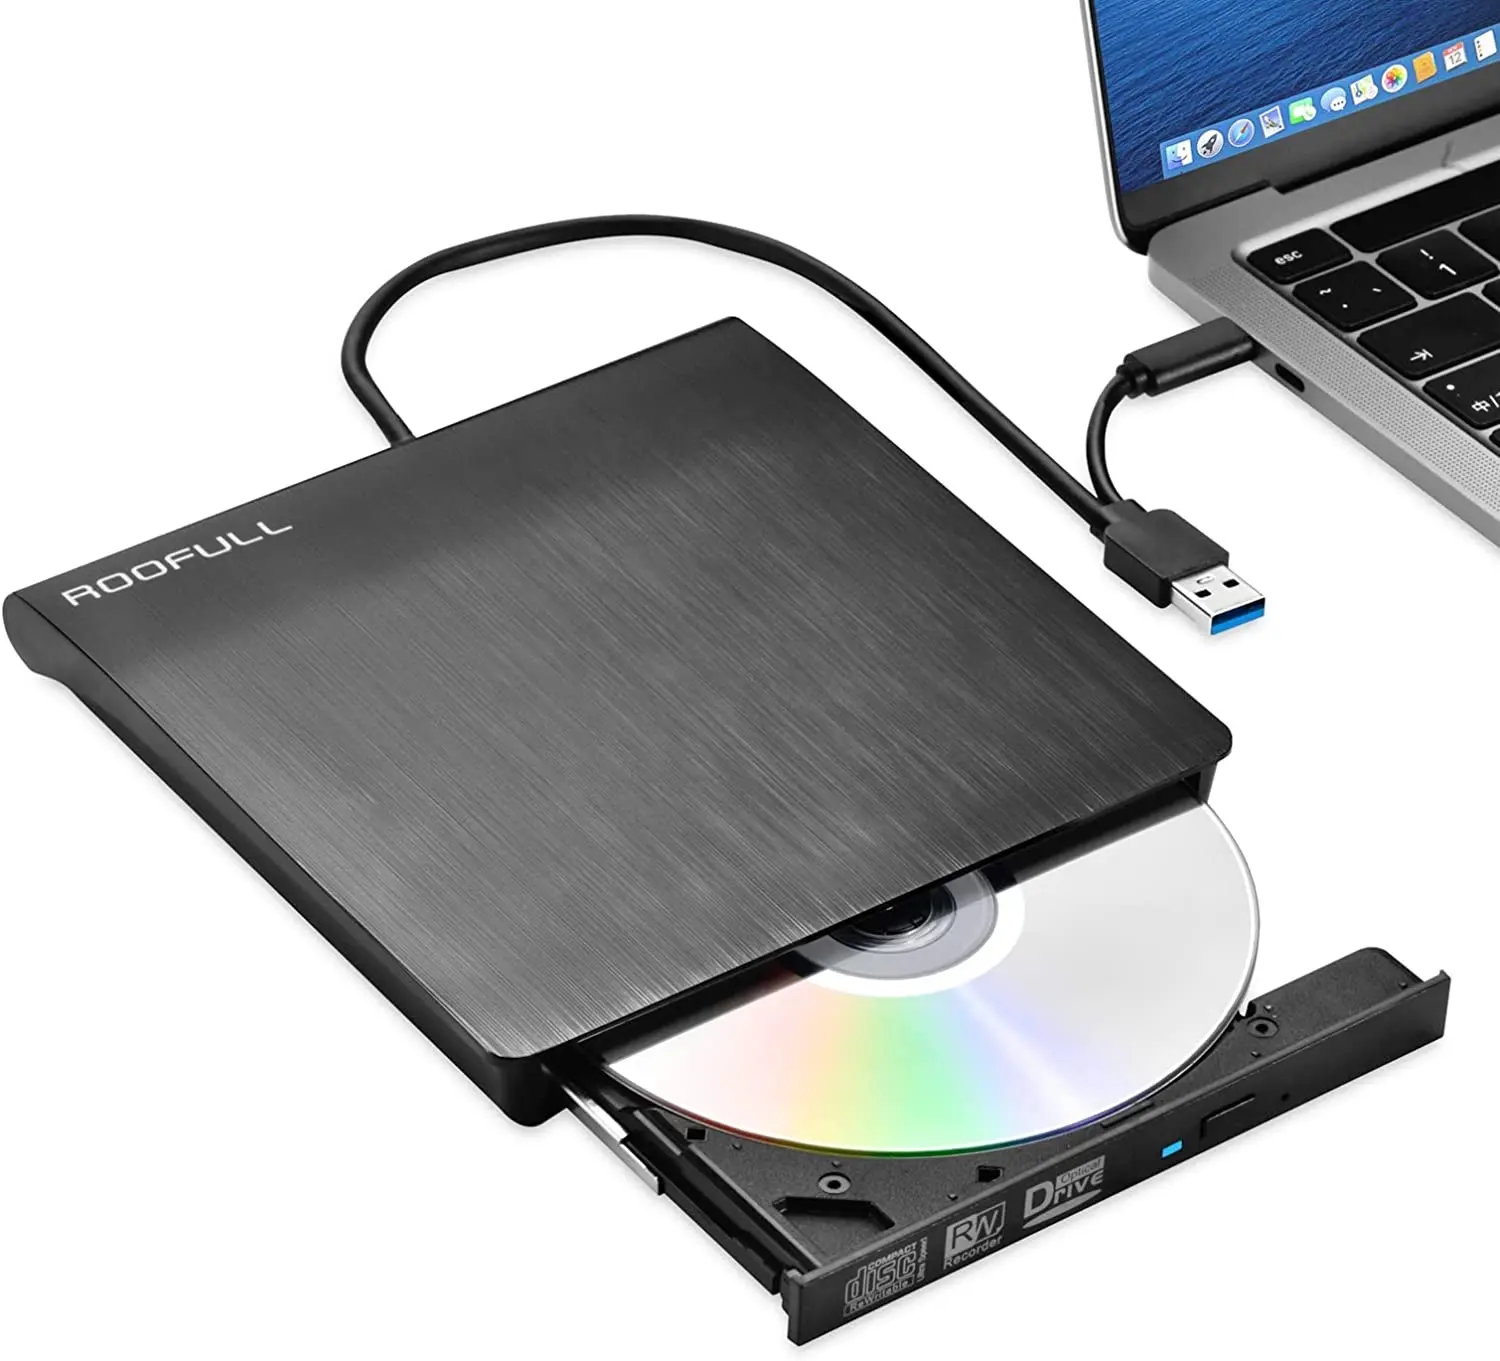 Harici CD DVD RW sürücü USB3.0 USB-C yazar brülör oyuncu okuyucu dizüstü PC için yüksek kalite sıcak satış ince renk kutusu OEM destek